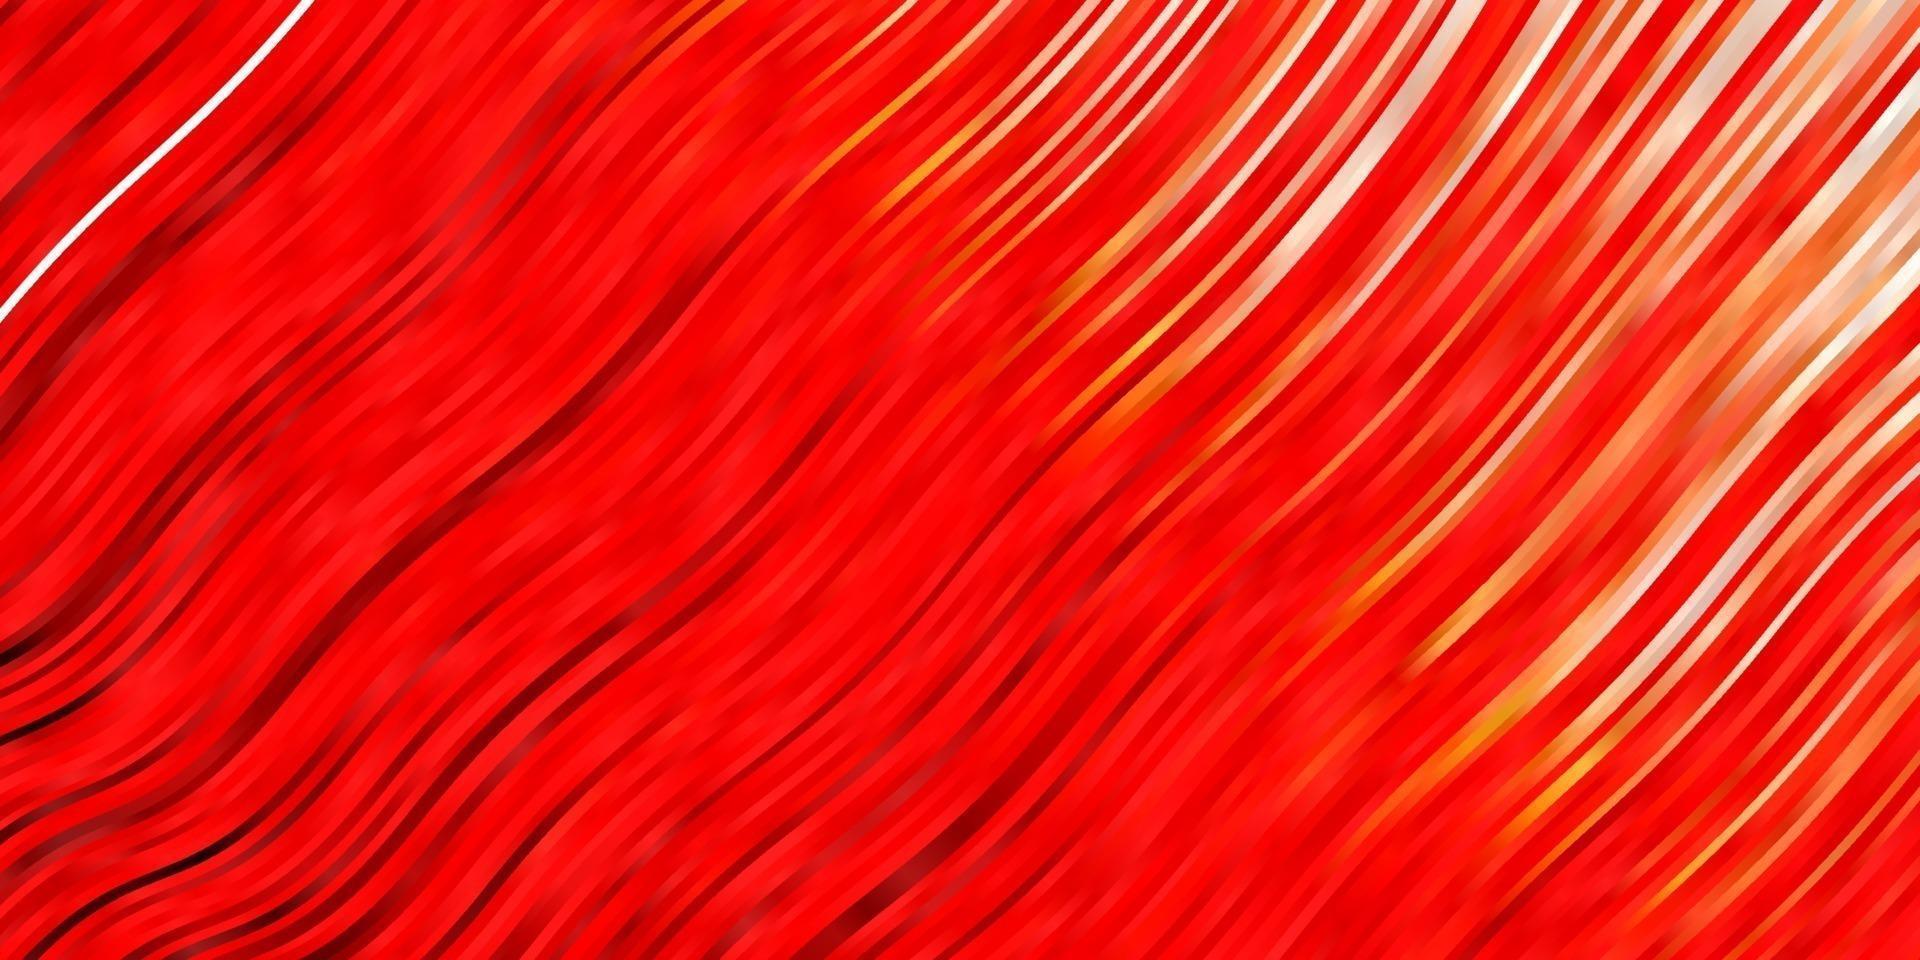 ljusröd vektorbakgrund med böjda linjer. vektor